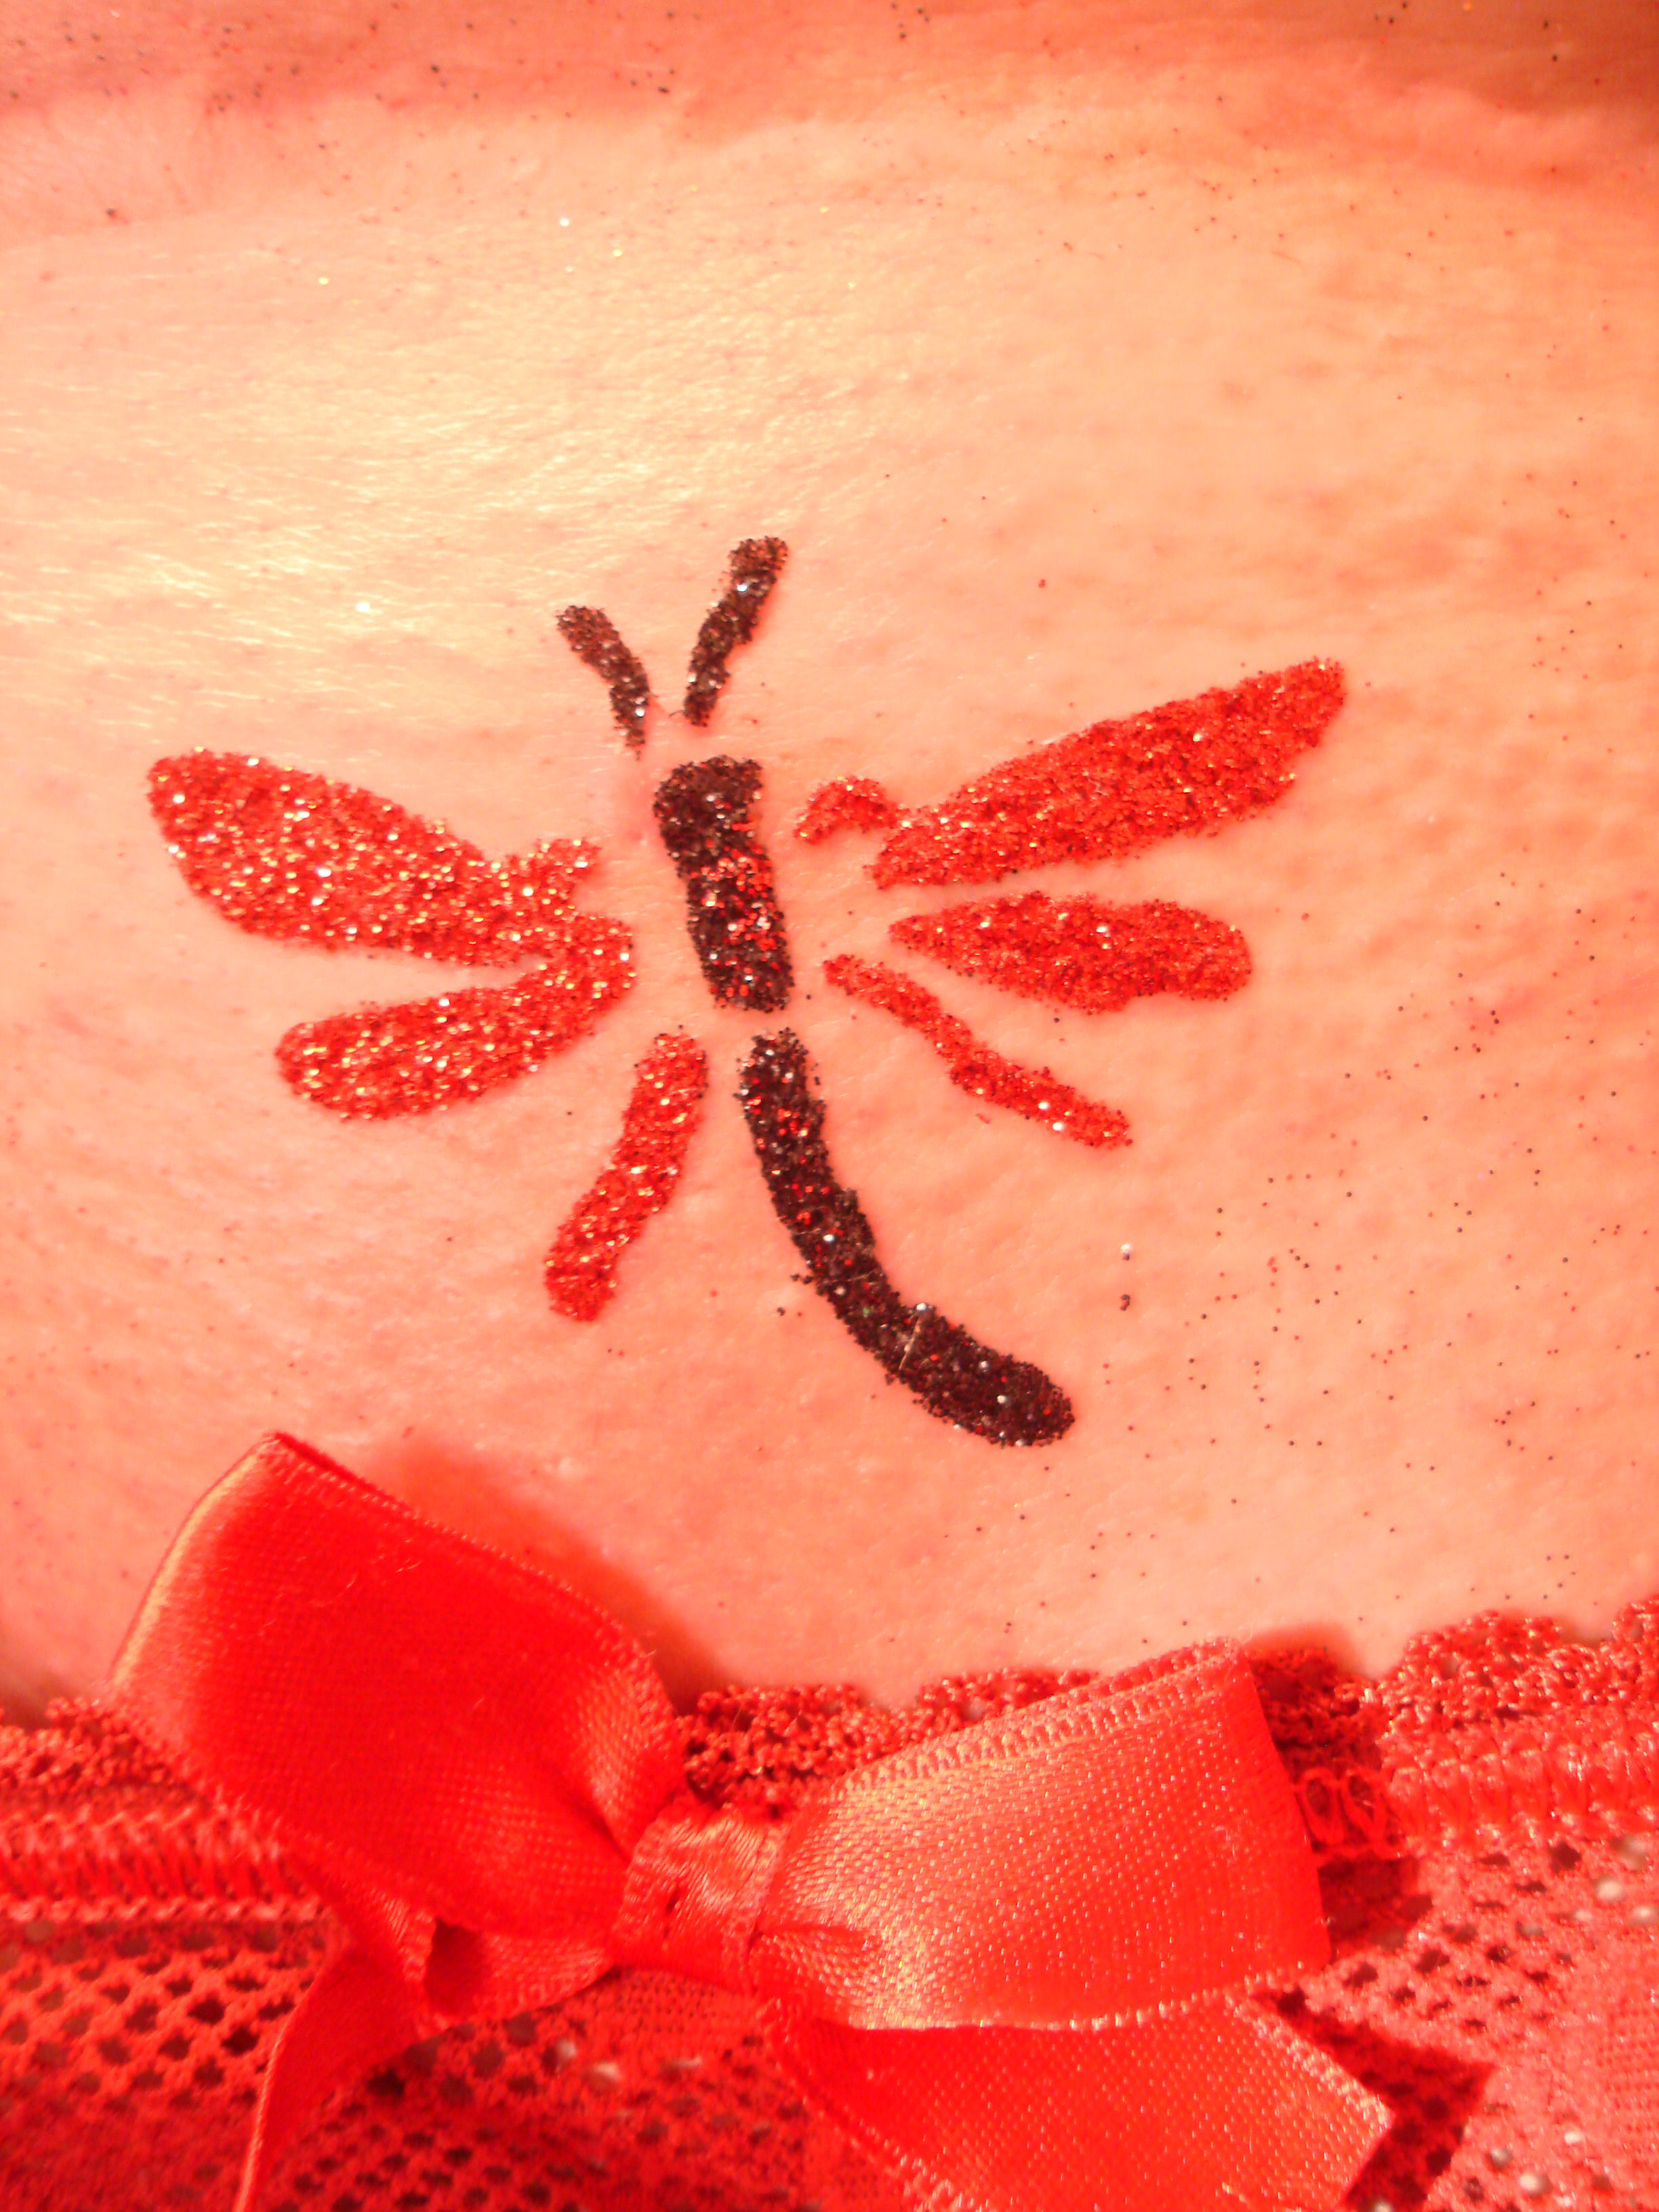 Биотатуировка хной в салоне эпиляции Электра - биотату татуировка хной